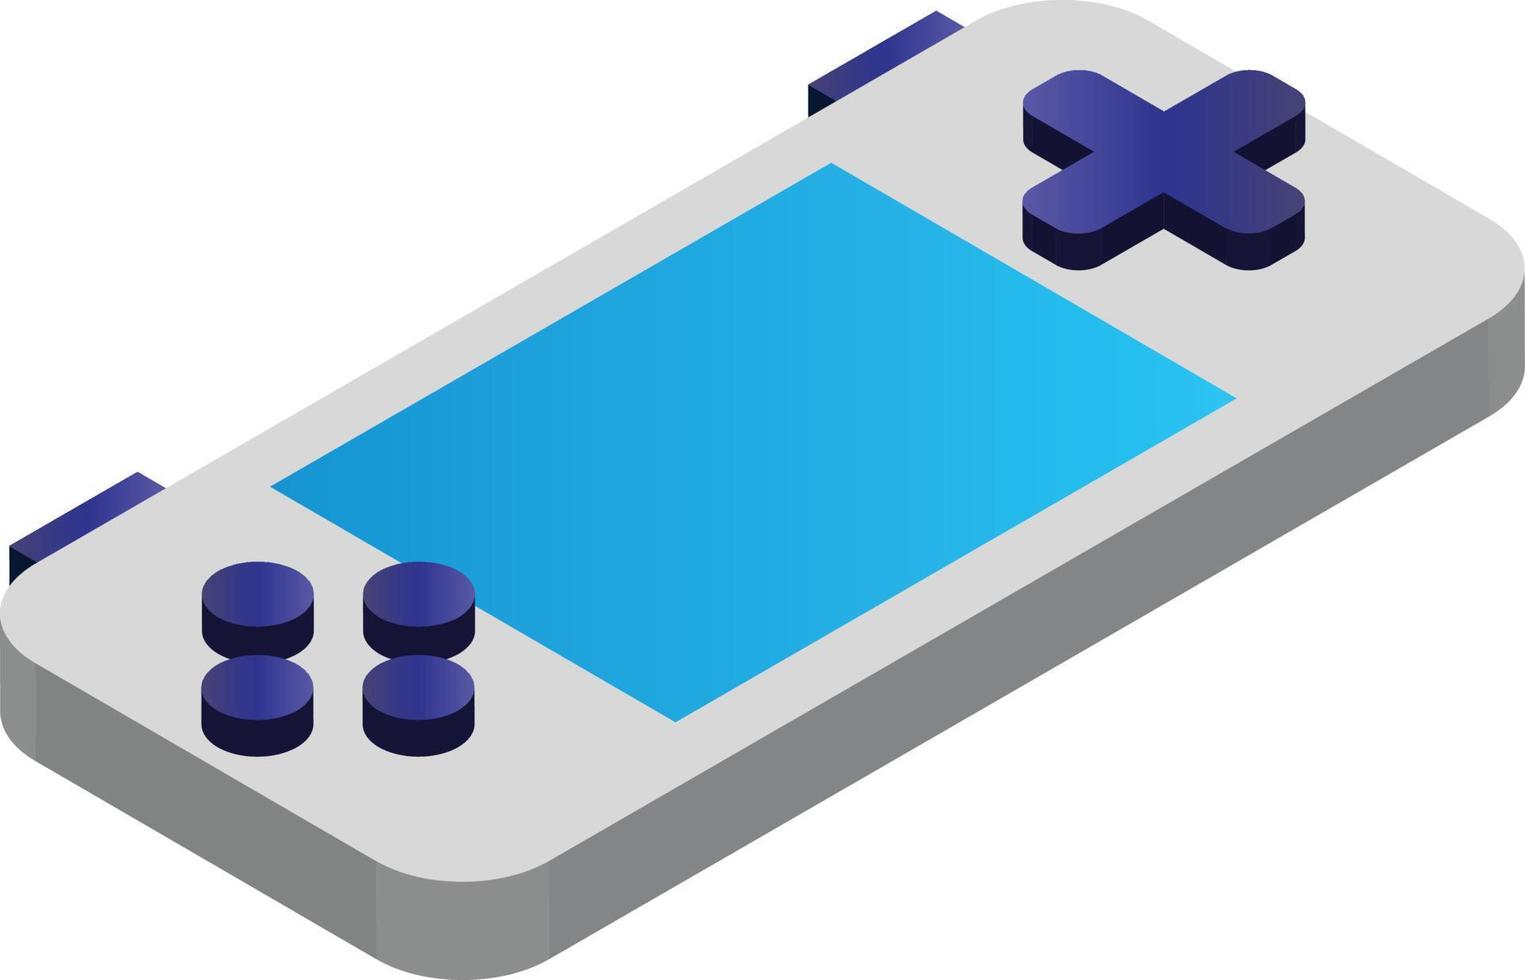 portable spel apparaat illustratie in 3d isometrische stijl vector